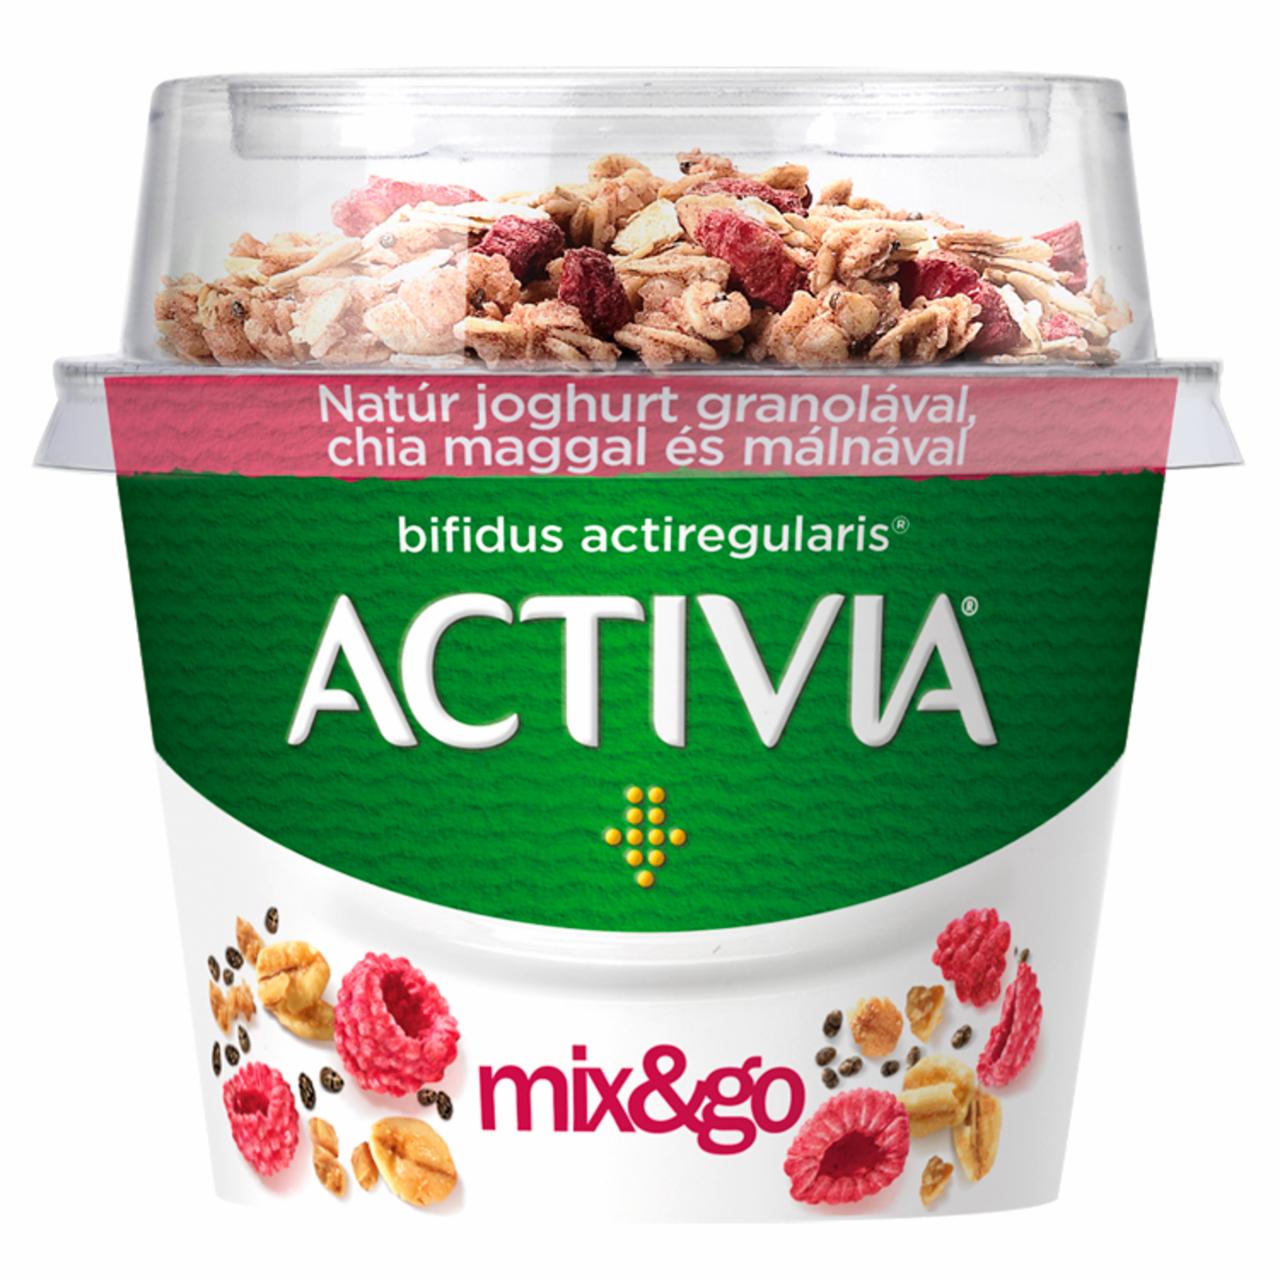 Képek - Danone Activia mix&go natúr joghurt granolával, chia maggal és málnával 170 g